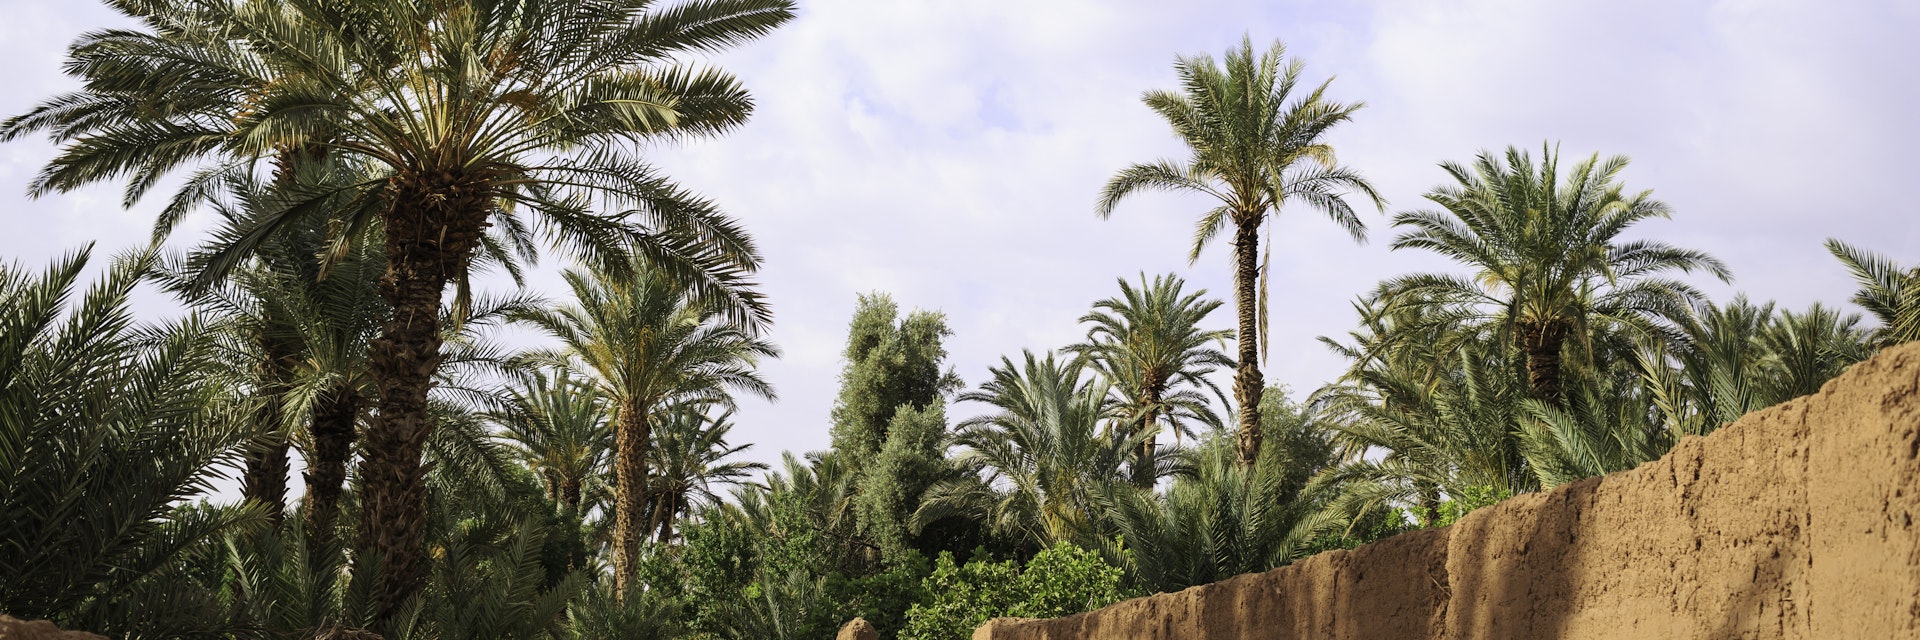 old Moroccan oasis near Zagora, Morocco